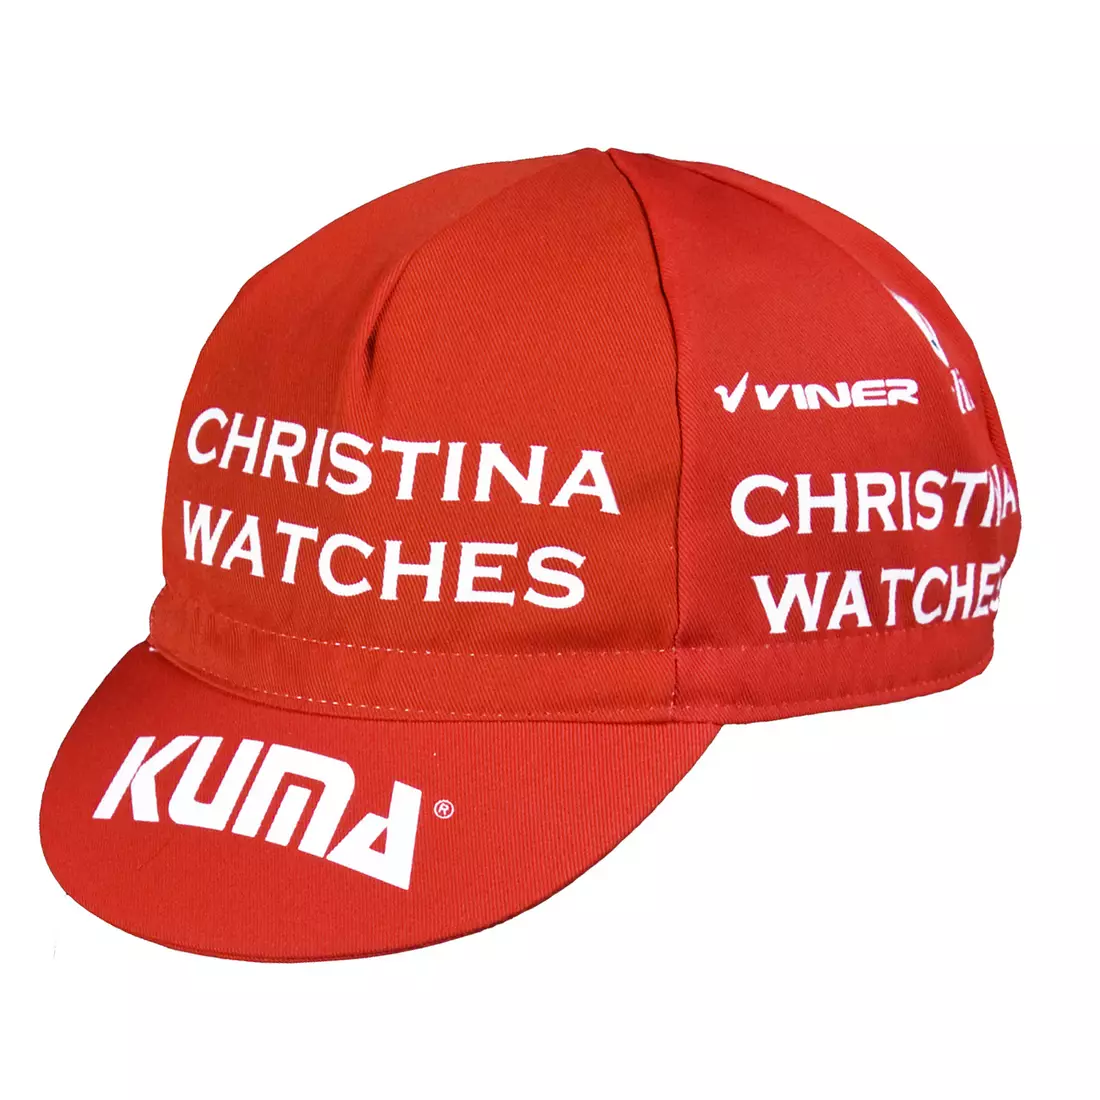 NALINI - TEAM CHRISTINA WATCHES-KUMA 2014 - cap